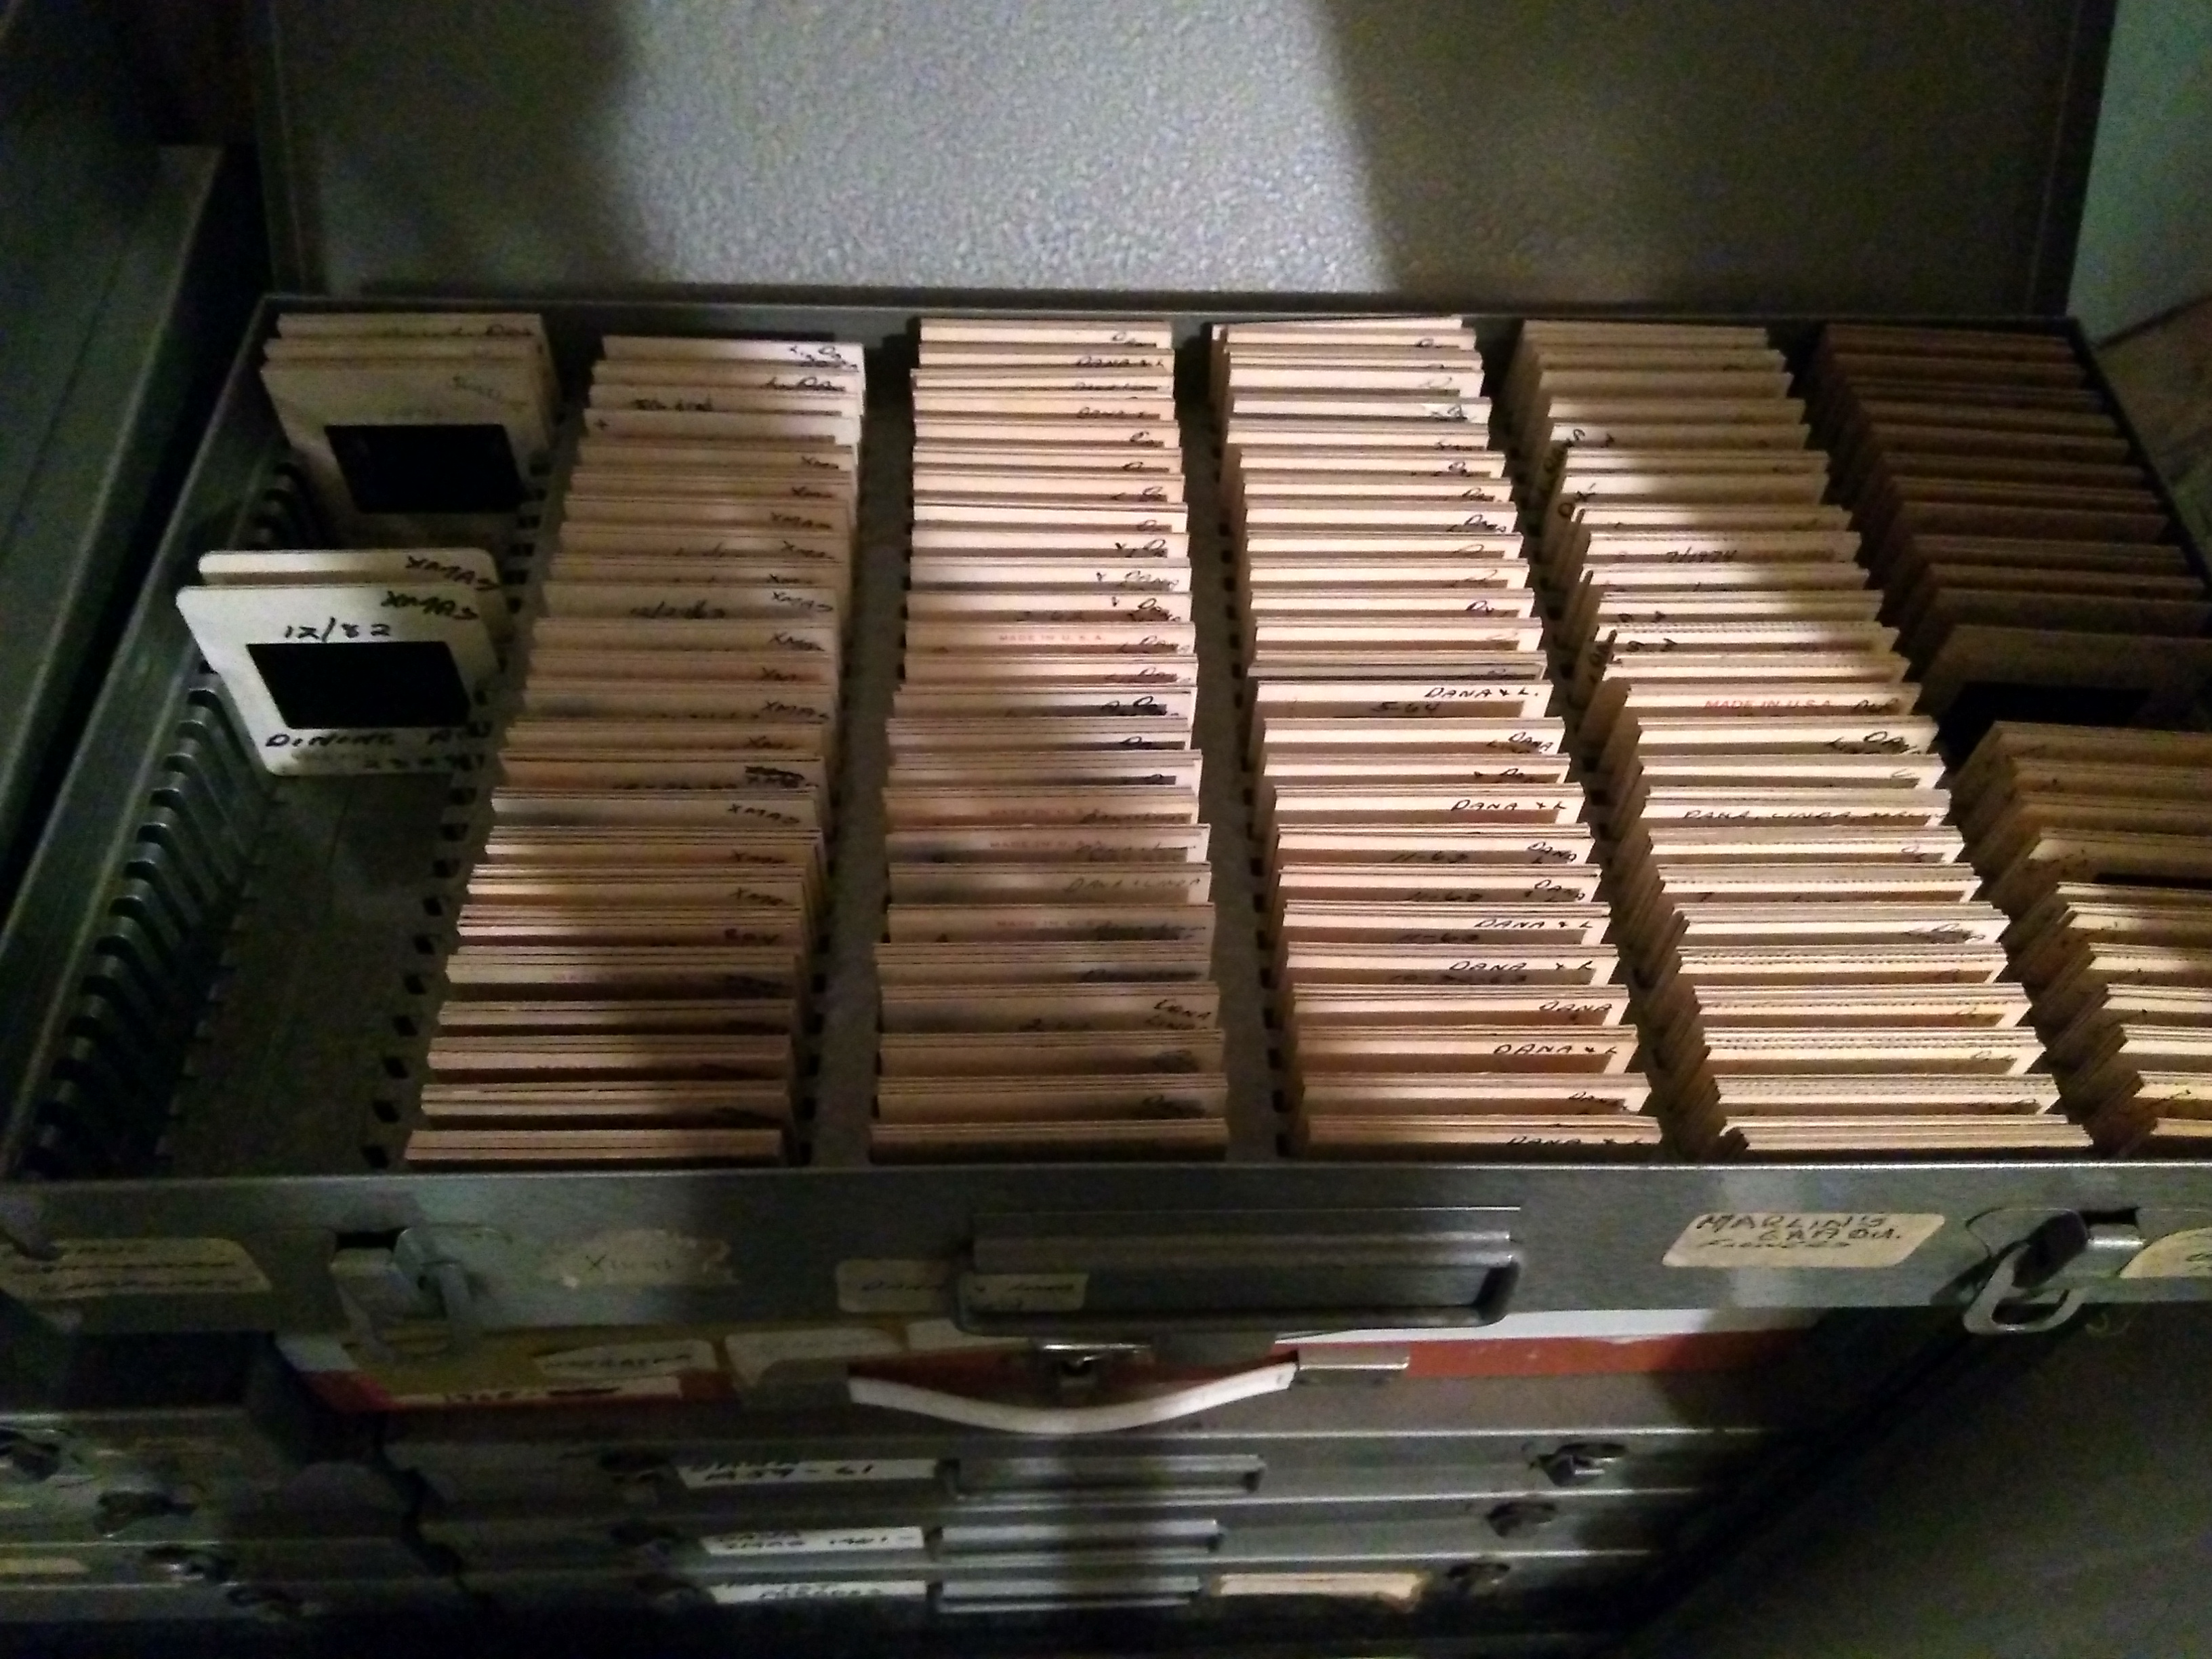 35 mm slide cases